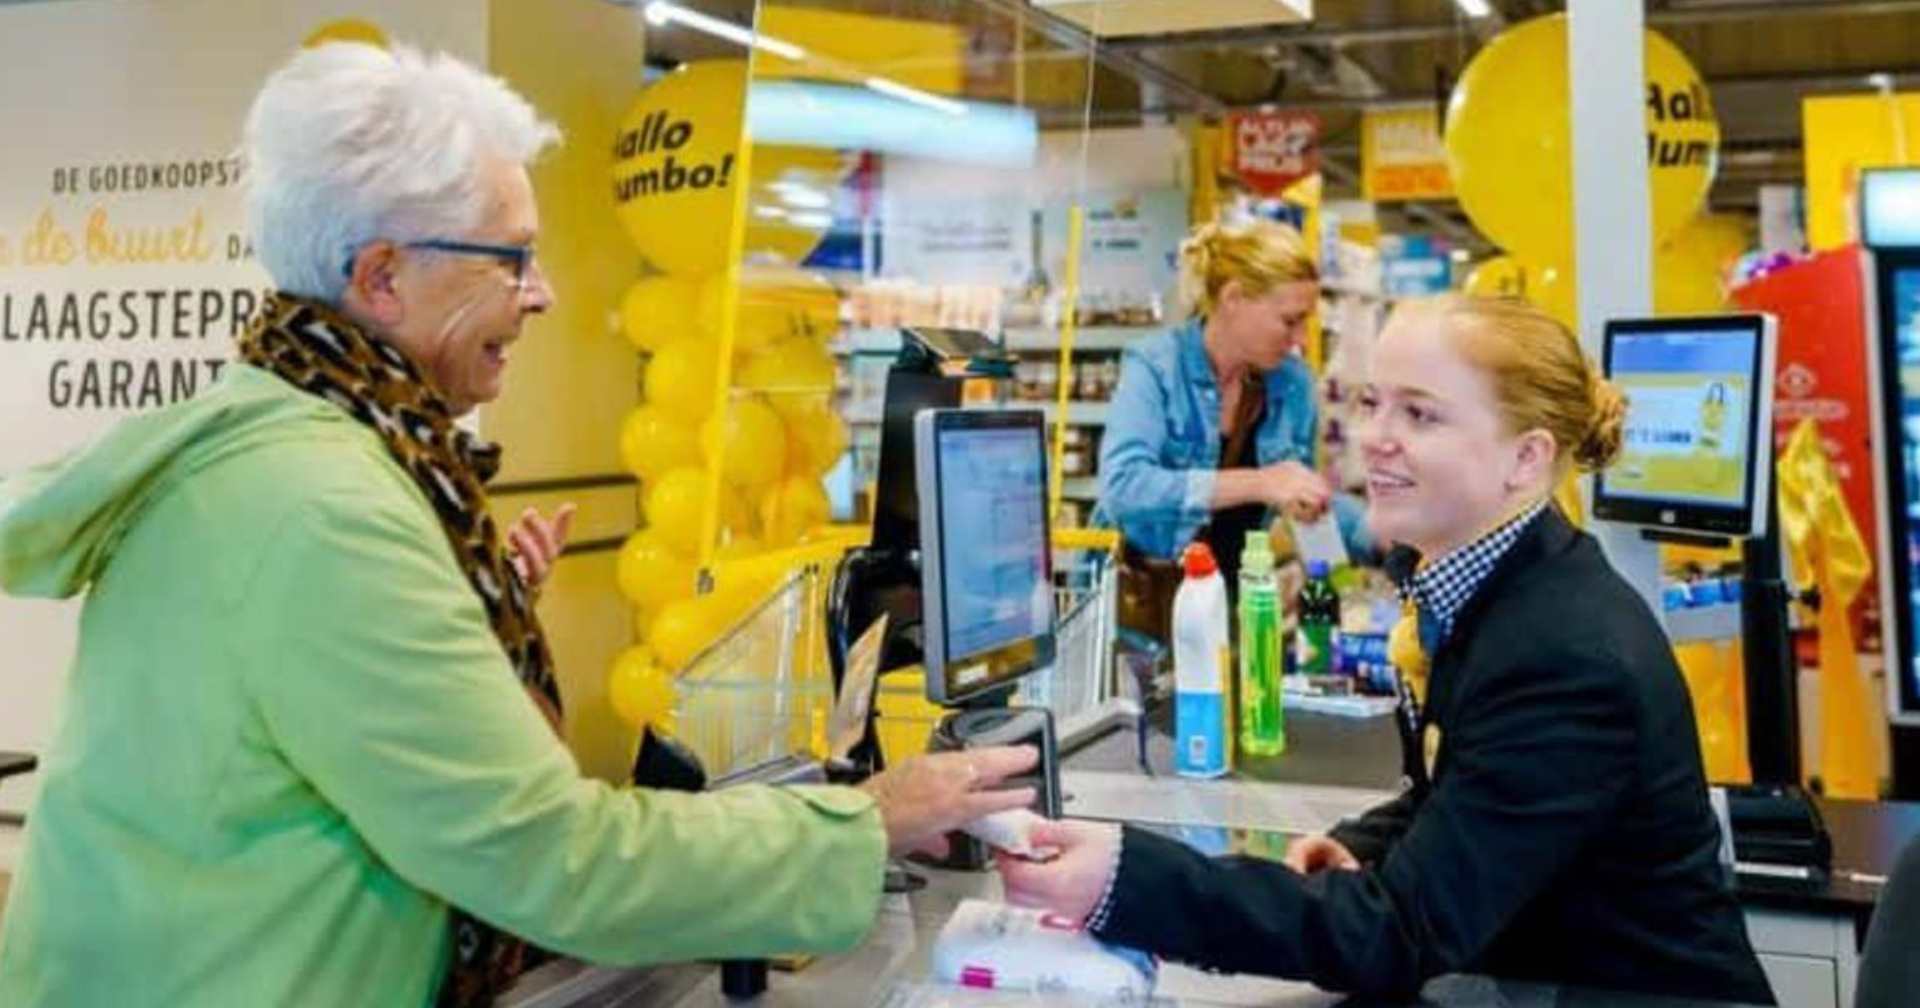 ชอปปิง คล้ายเหงาที่แท้ทรู ซูเปอร์มาร์เก็ต ในเนเธอร์แลนด์ เปิด ‘ช่องจ่ายเงินแบบช้าพิเศษ’ ให้ผู้สูงอายุได้พูดคุยคลายเหงา